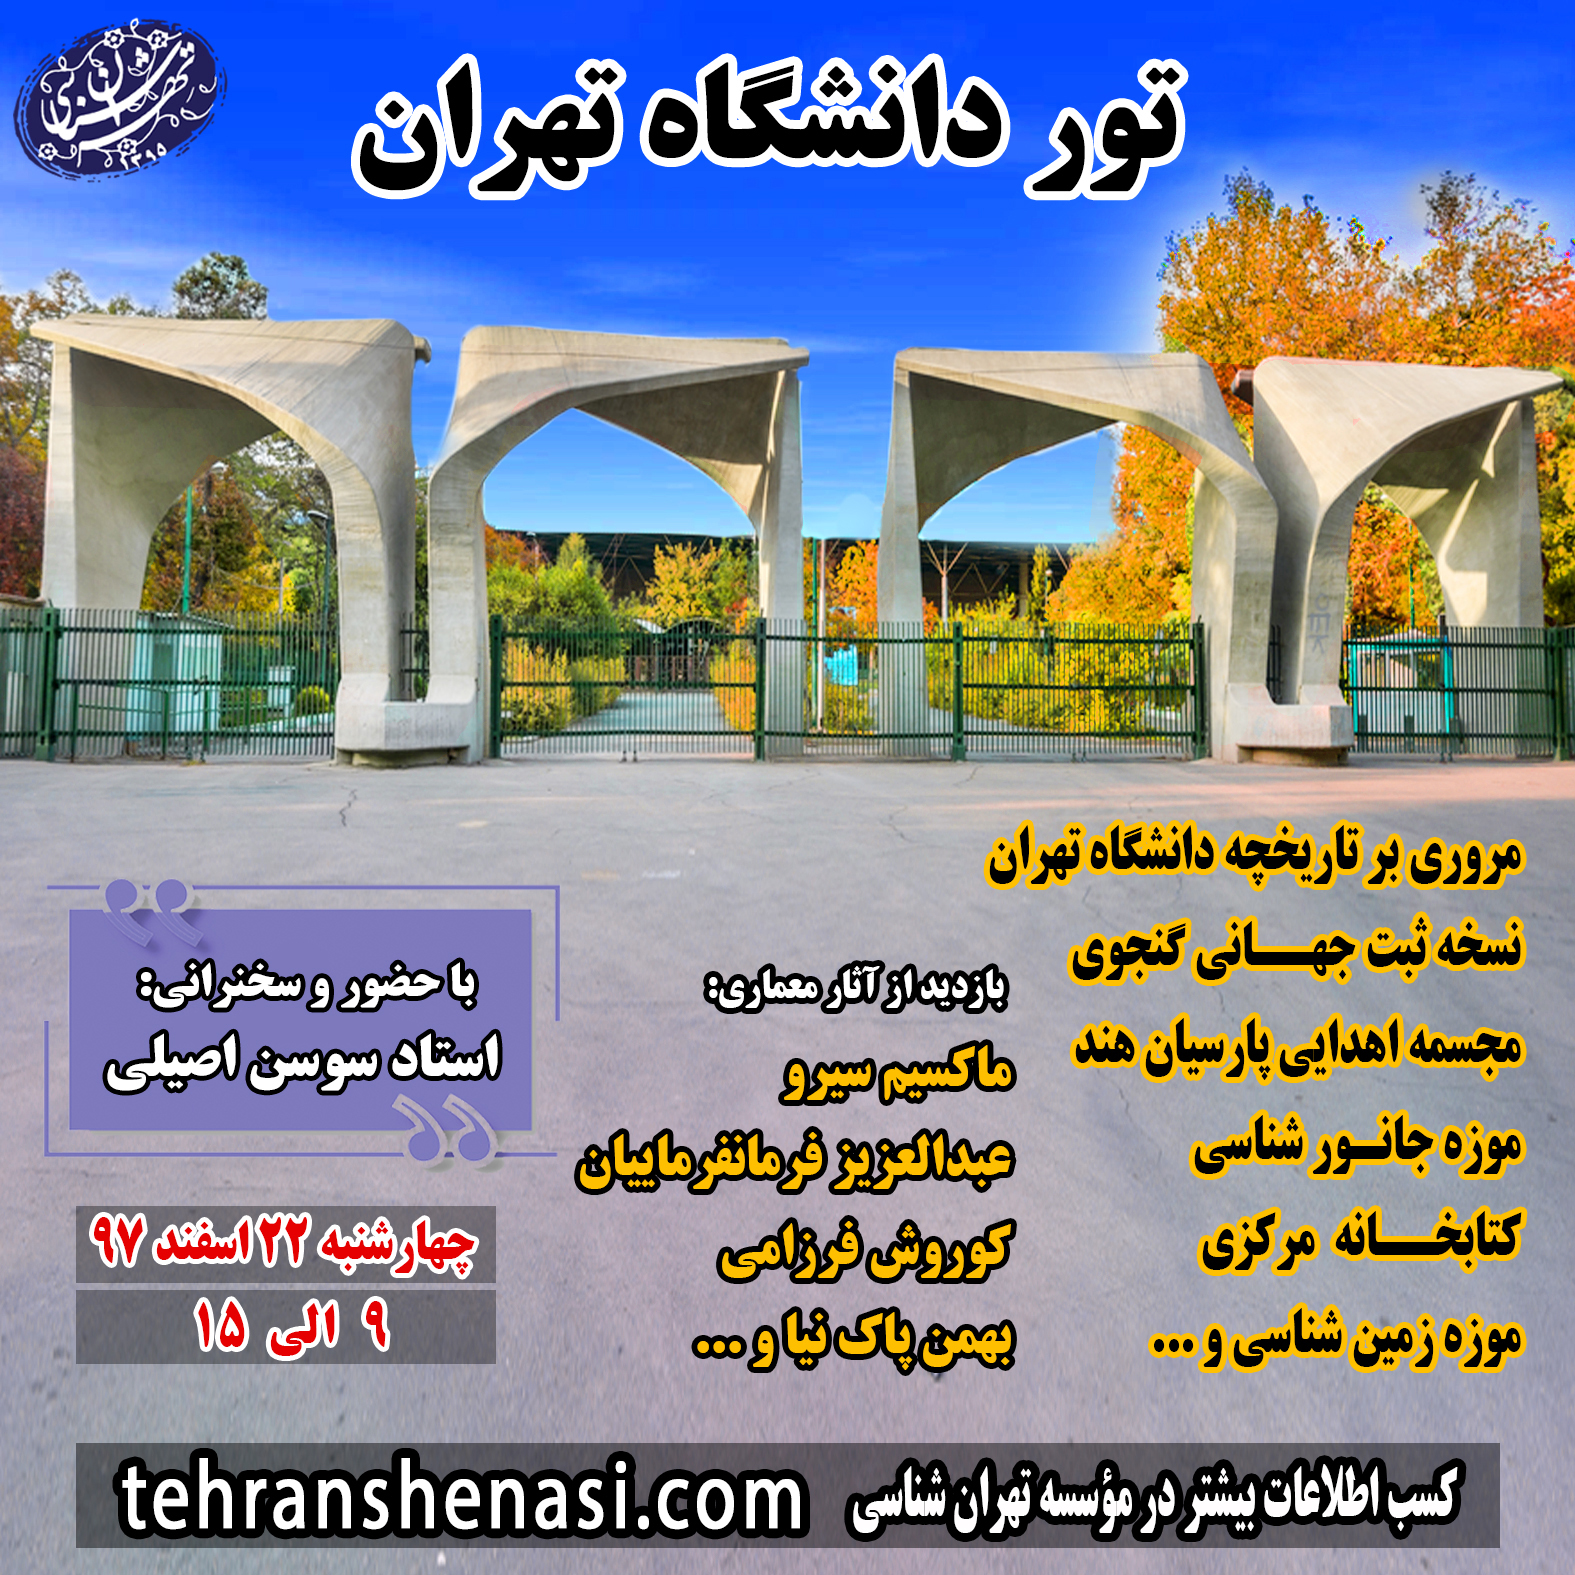 تور دانشگاه تهران موسسه تهران شناسی